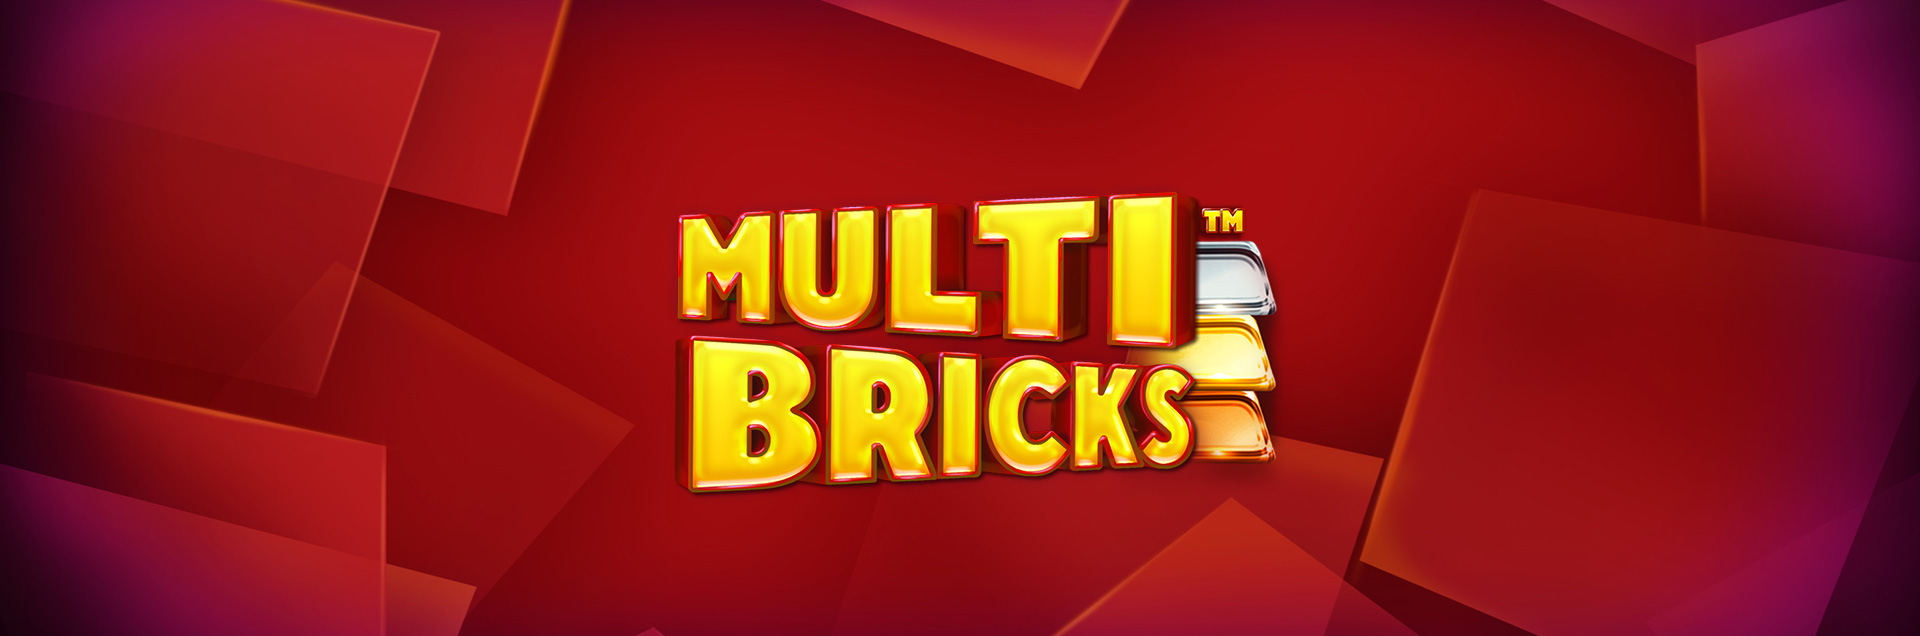 Multi Bricks header games